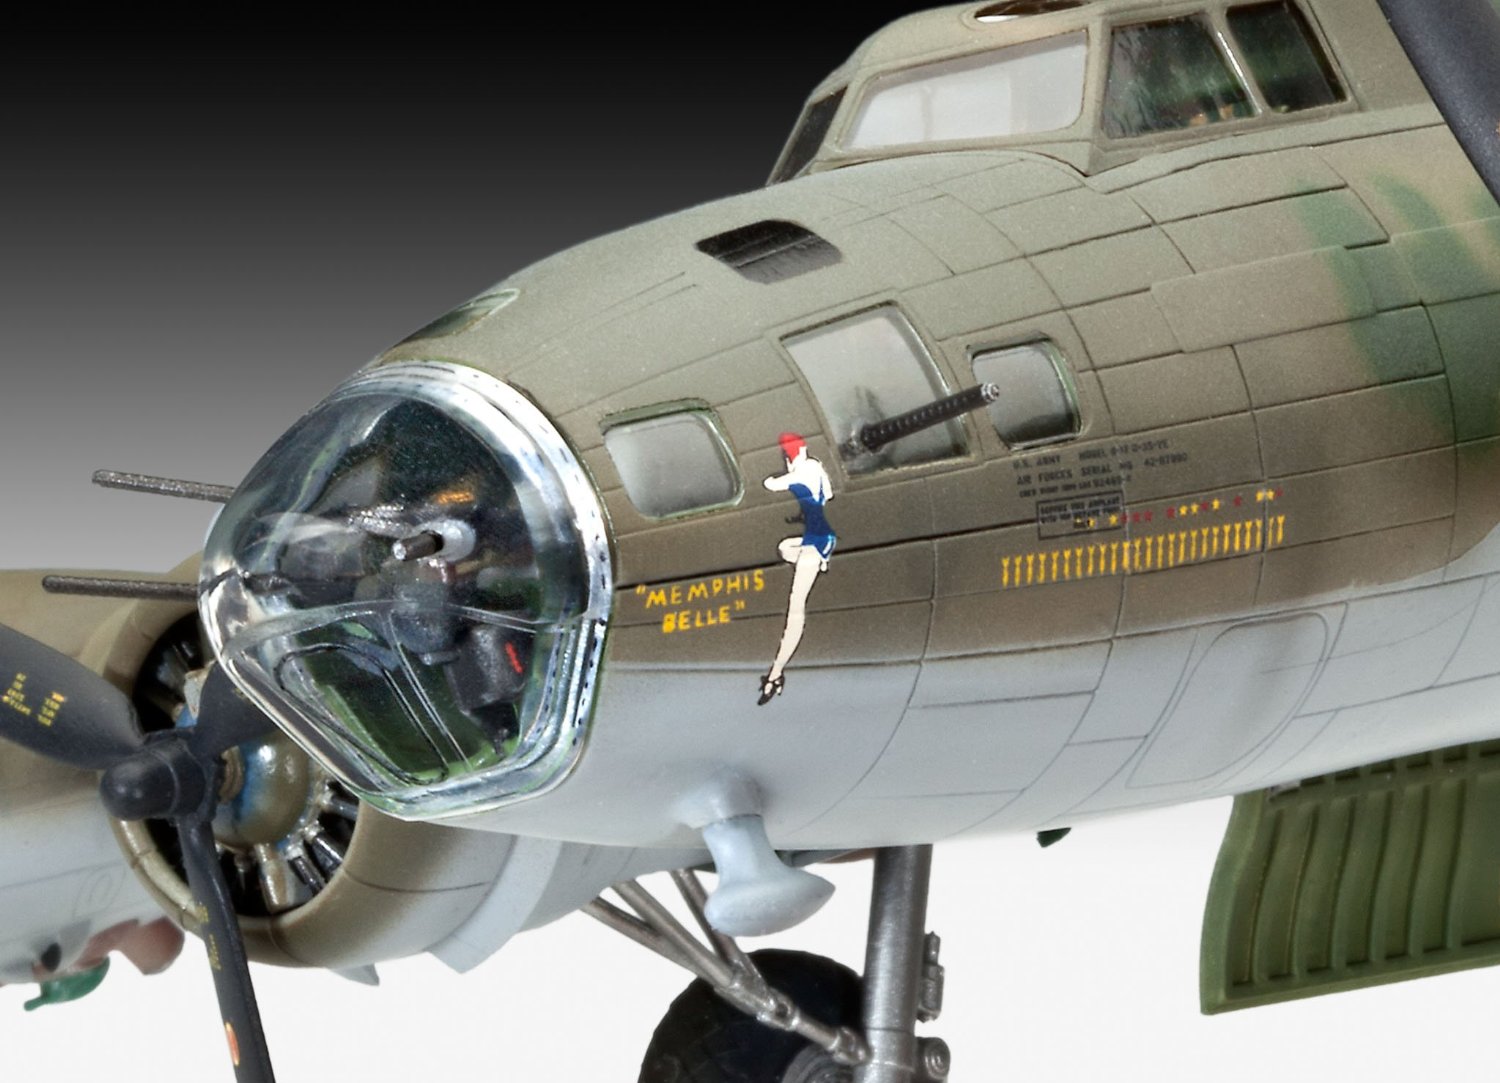 1/72 B-17F “メンフィス・ベル” プラモデル